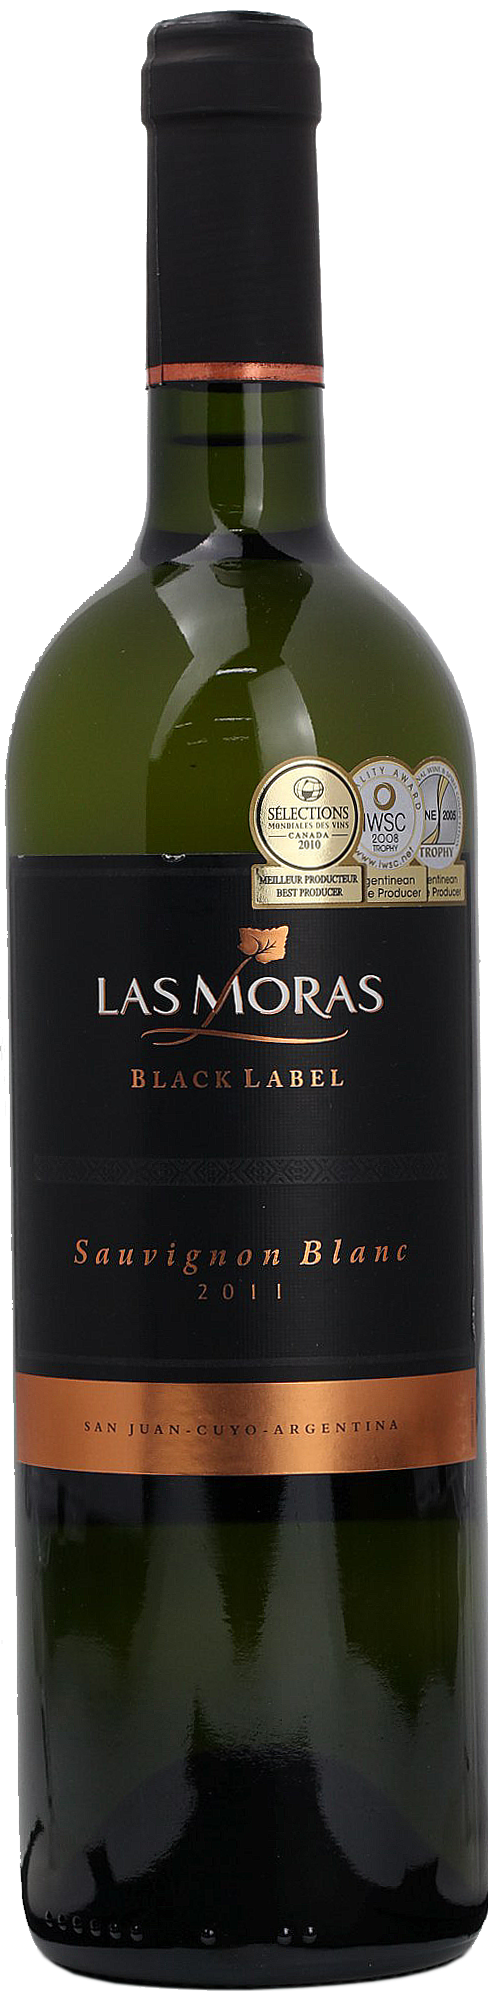 Las Moras Black Label Sauvignon Blanc